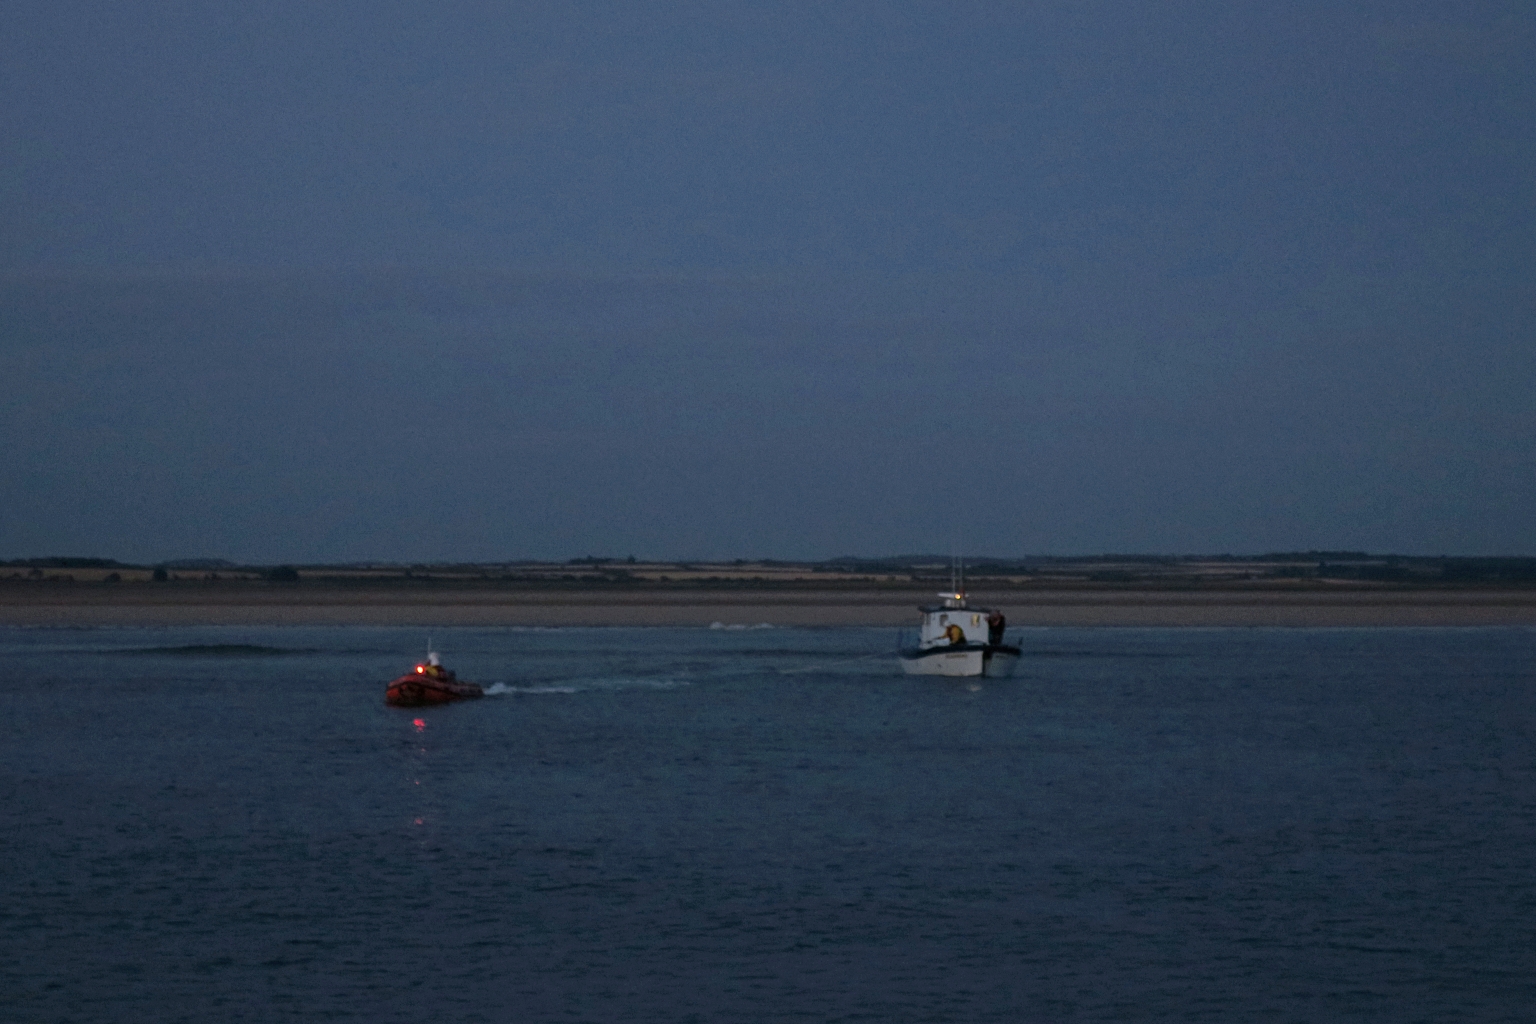 The ILB tows 'Kazmar' off the beach as the tide floods, 14/7/22